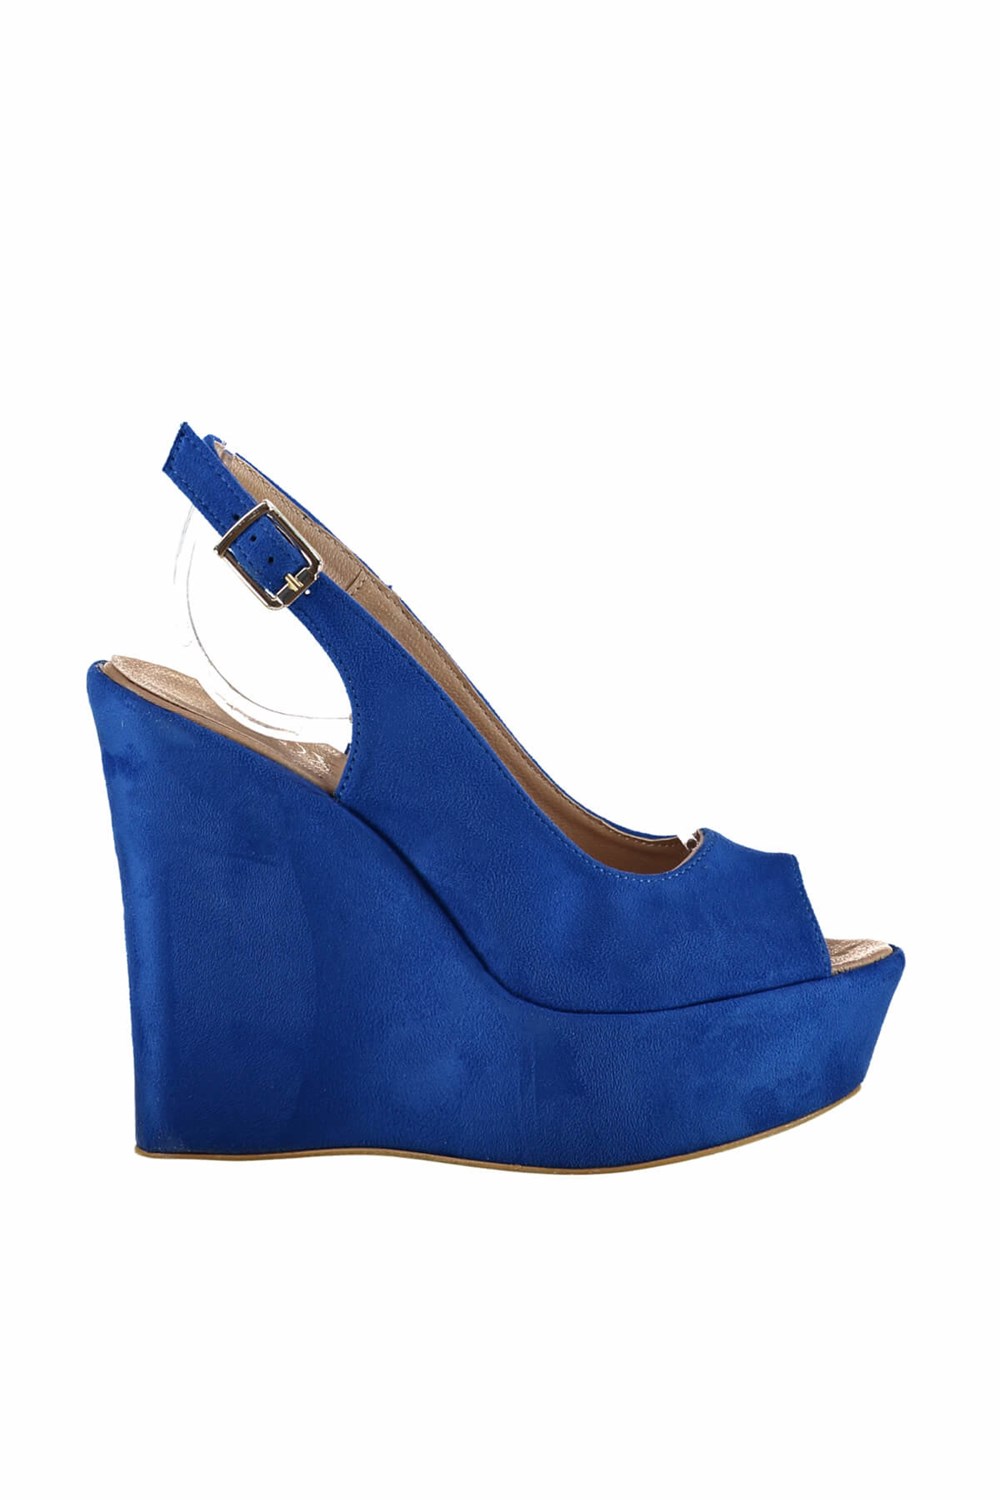 Fox Shoes Saks Mavi Kadın Dolgu Topuklu Ayakkabı D459808002